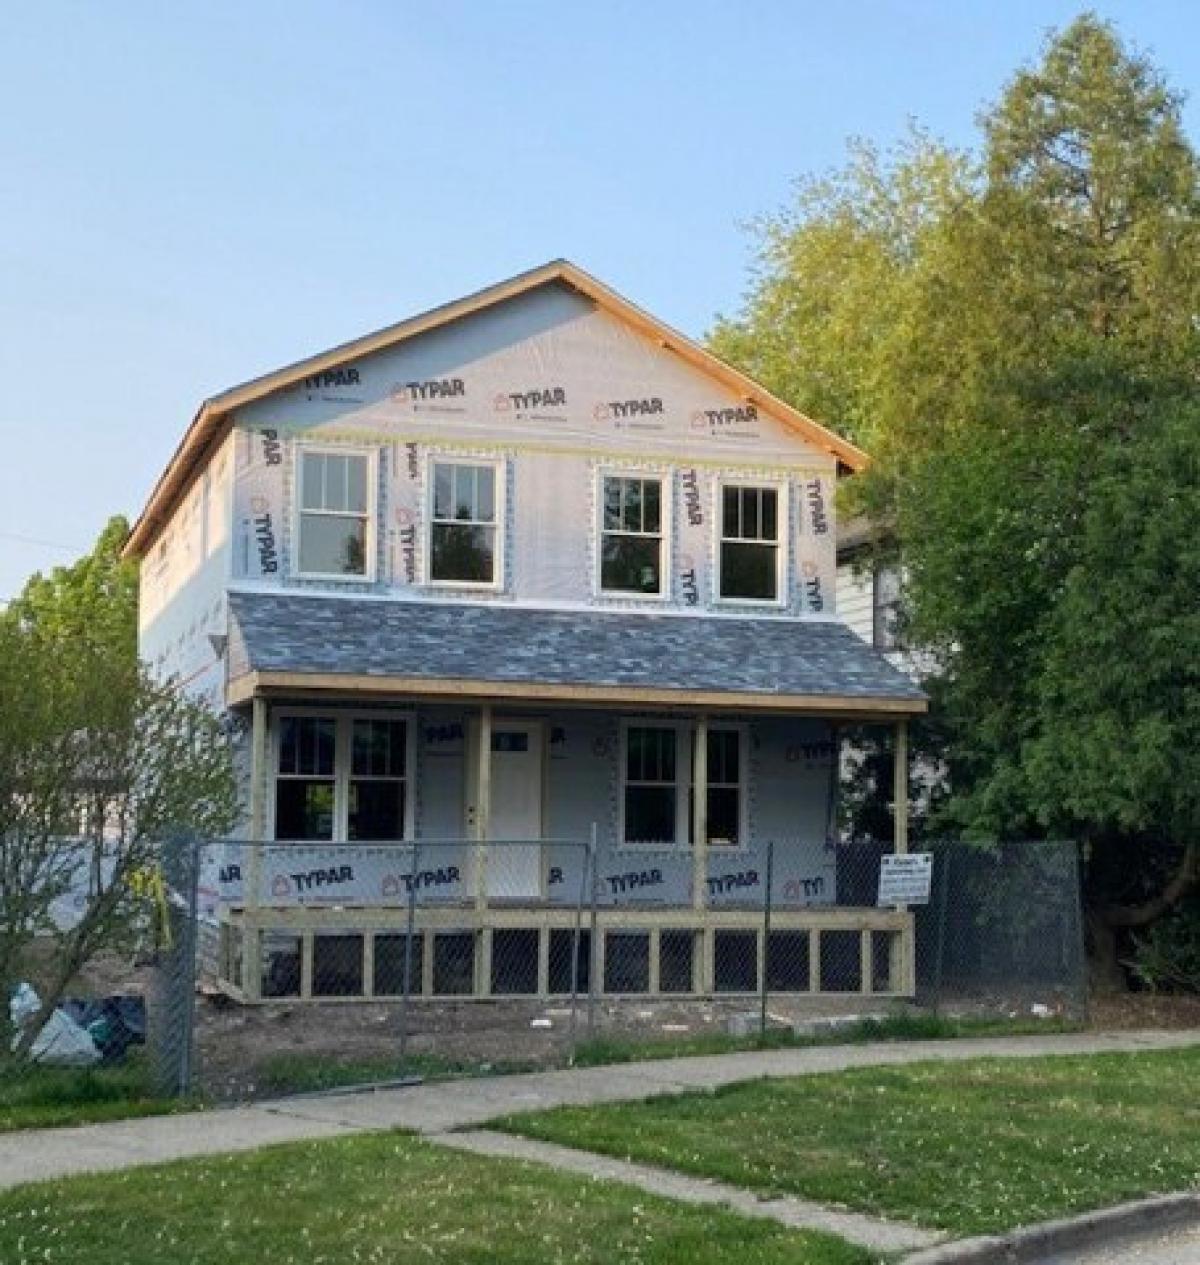 Picture of Home For Sale in Morton Grove, Illinois, United States